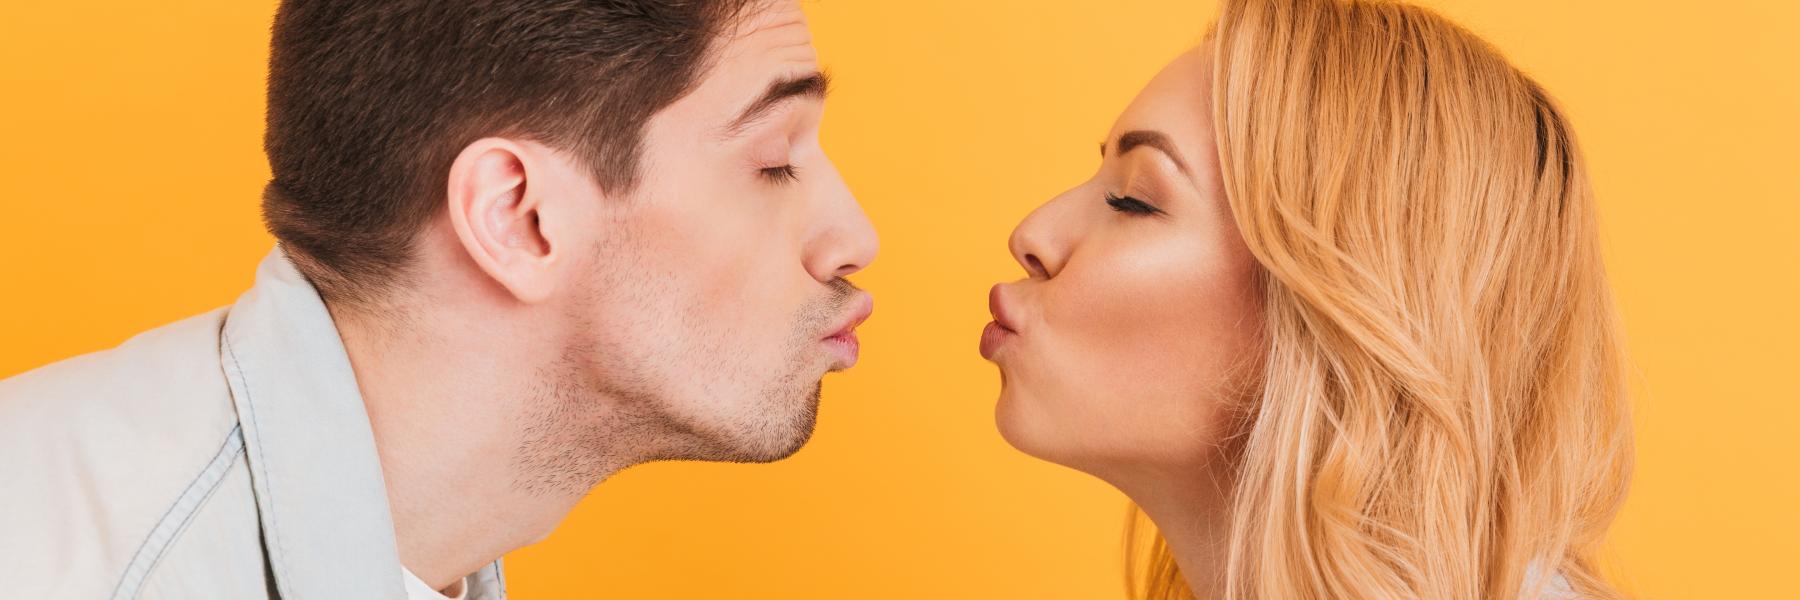 بعد أن تعرف فوائد التقبيل الآتية، لن تخرج من بيتك الّا بعد تقبيل زوجتك!